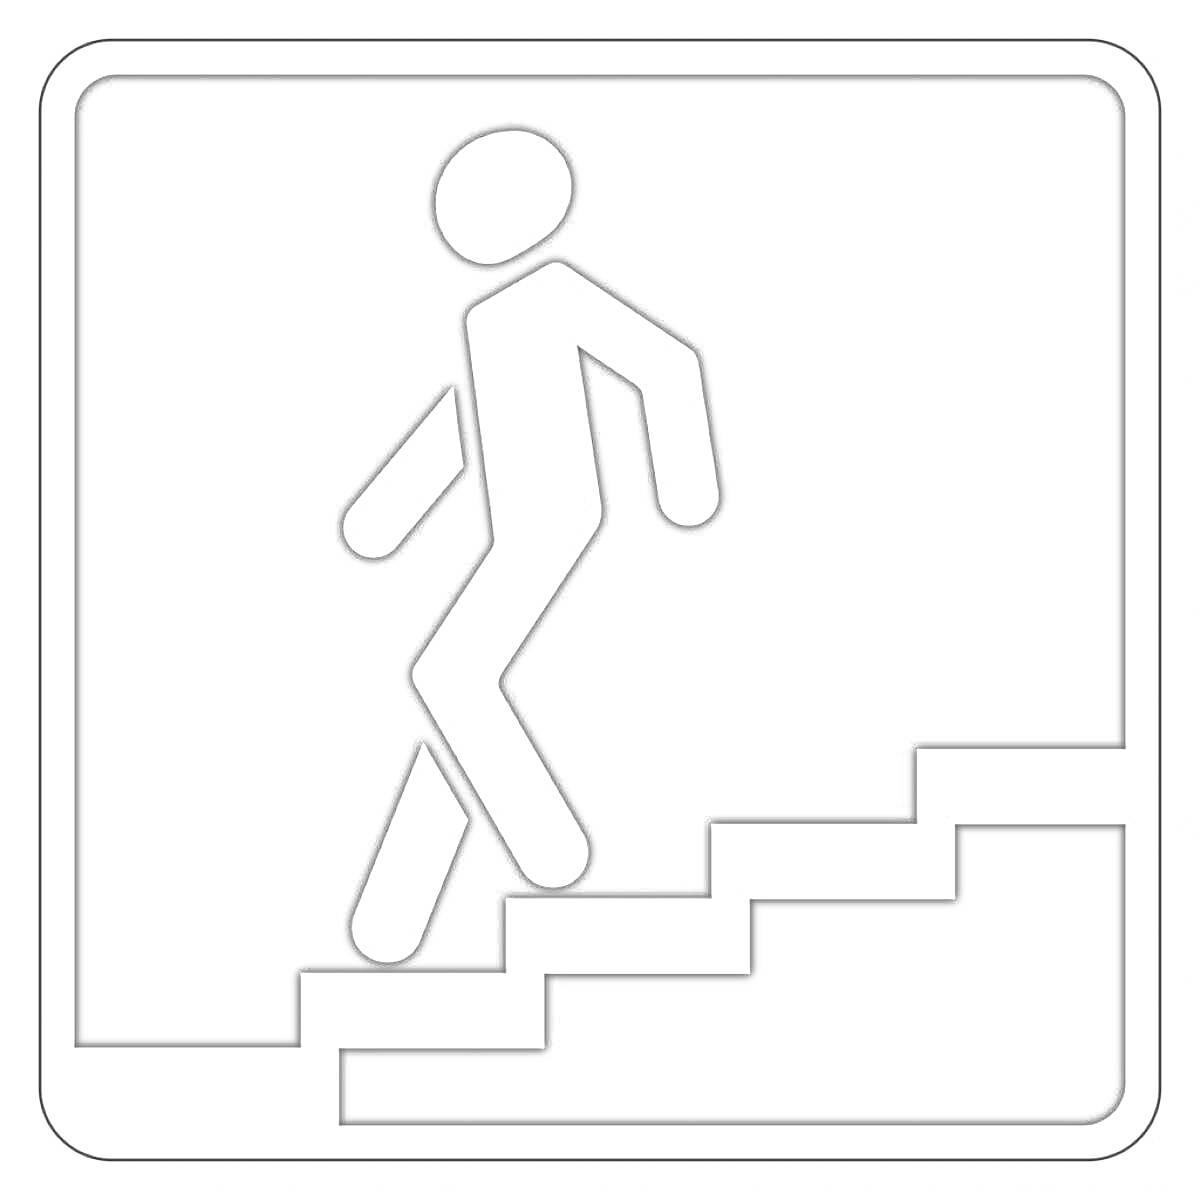 Раскраска Надземный пешеходный переход, человек спускается по лестнице